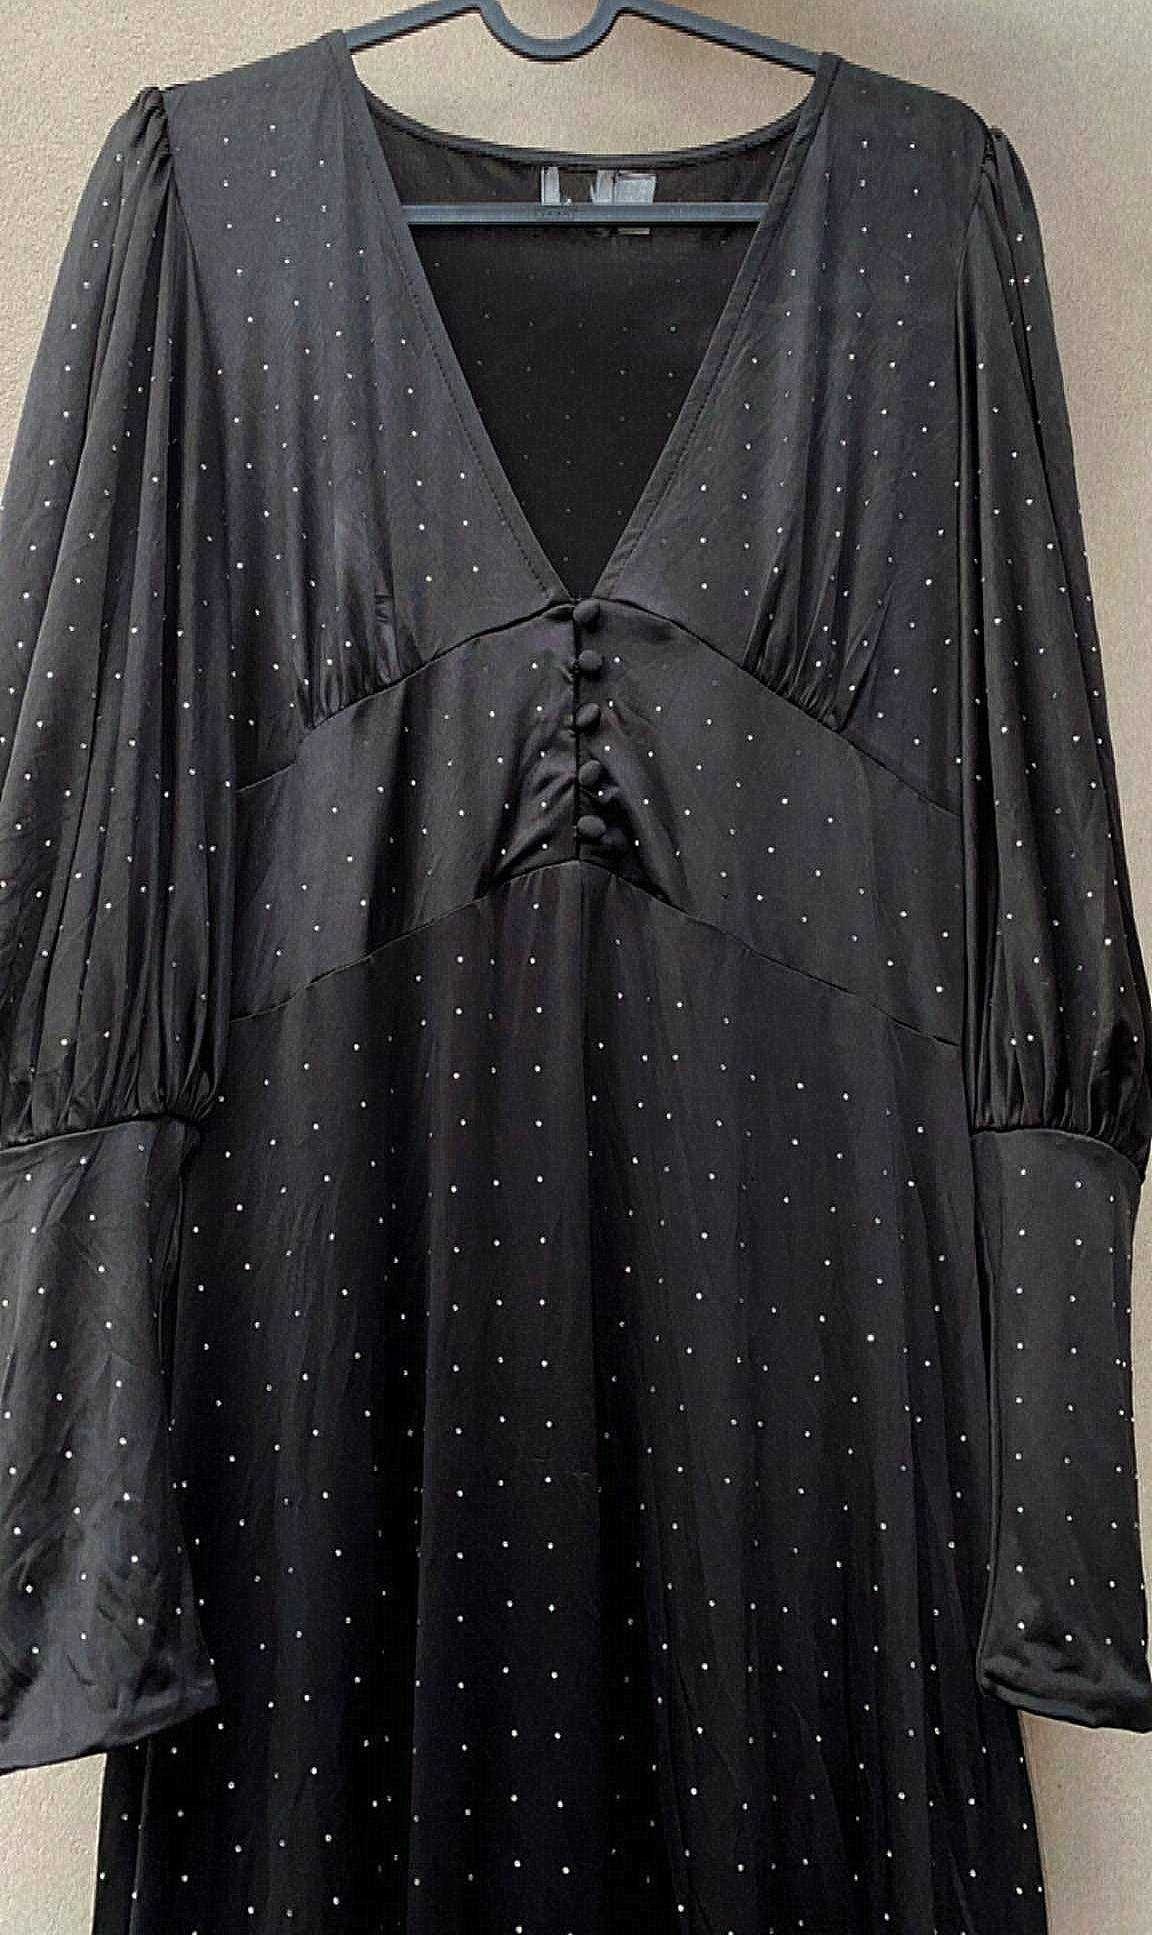 ASOS czarna sukienka z długim bufiastym rękawem, rozcięcie z przodu